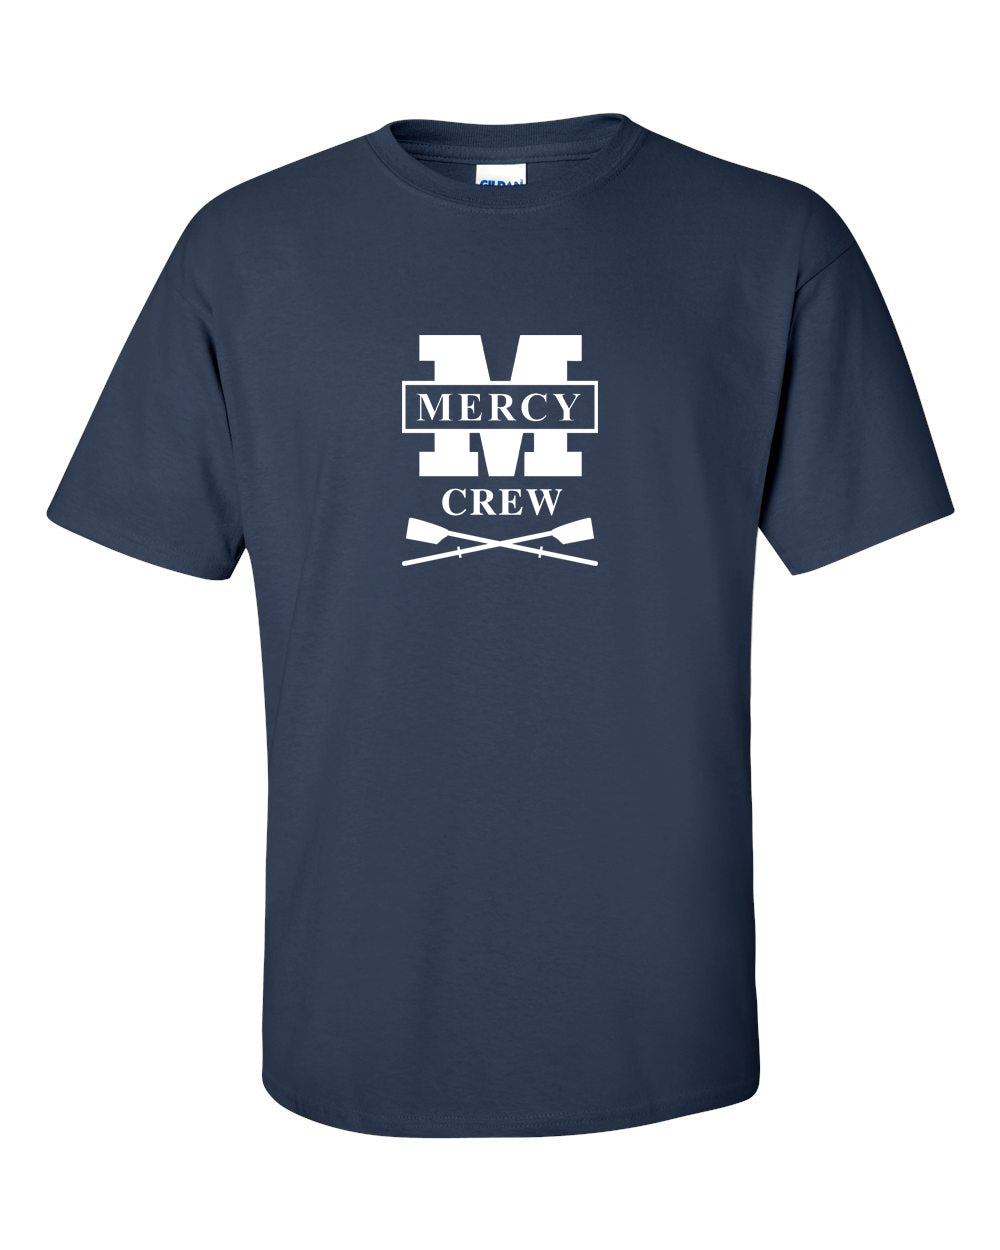 100% Cotton Mercy Crew Men's Team Spirit T-Shirt